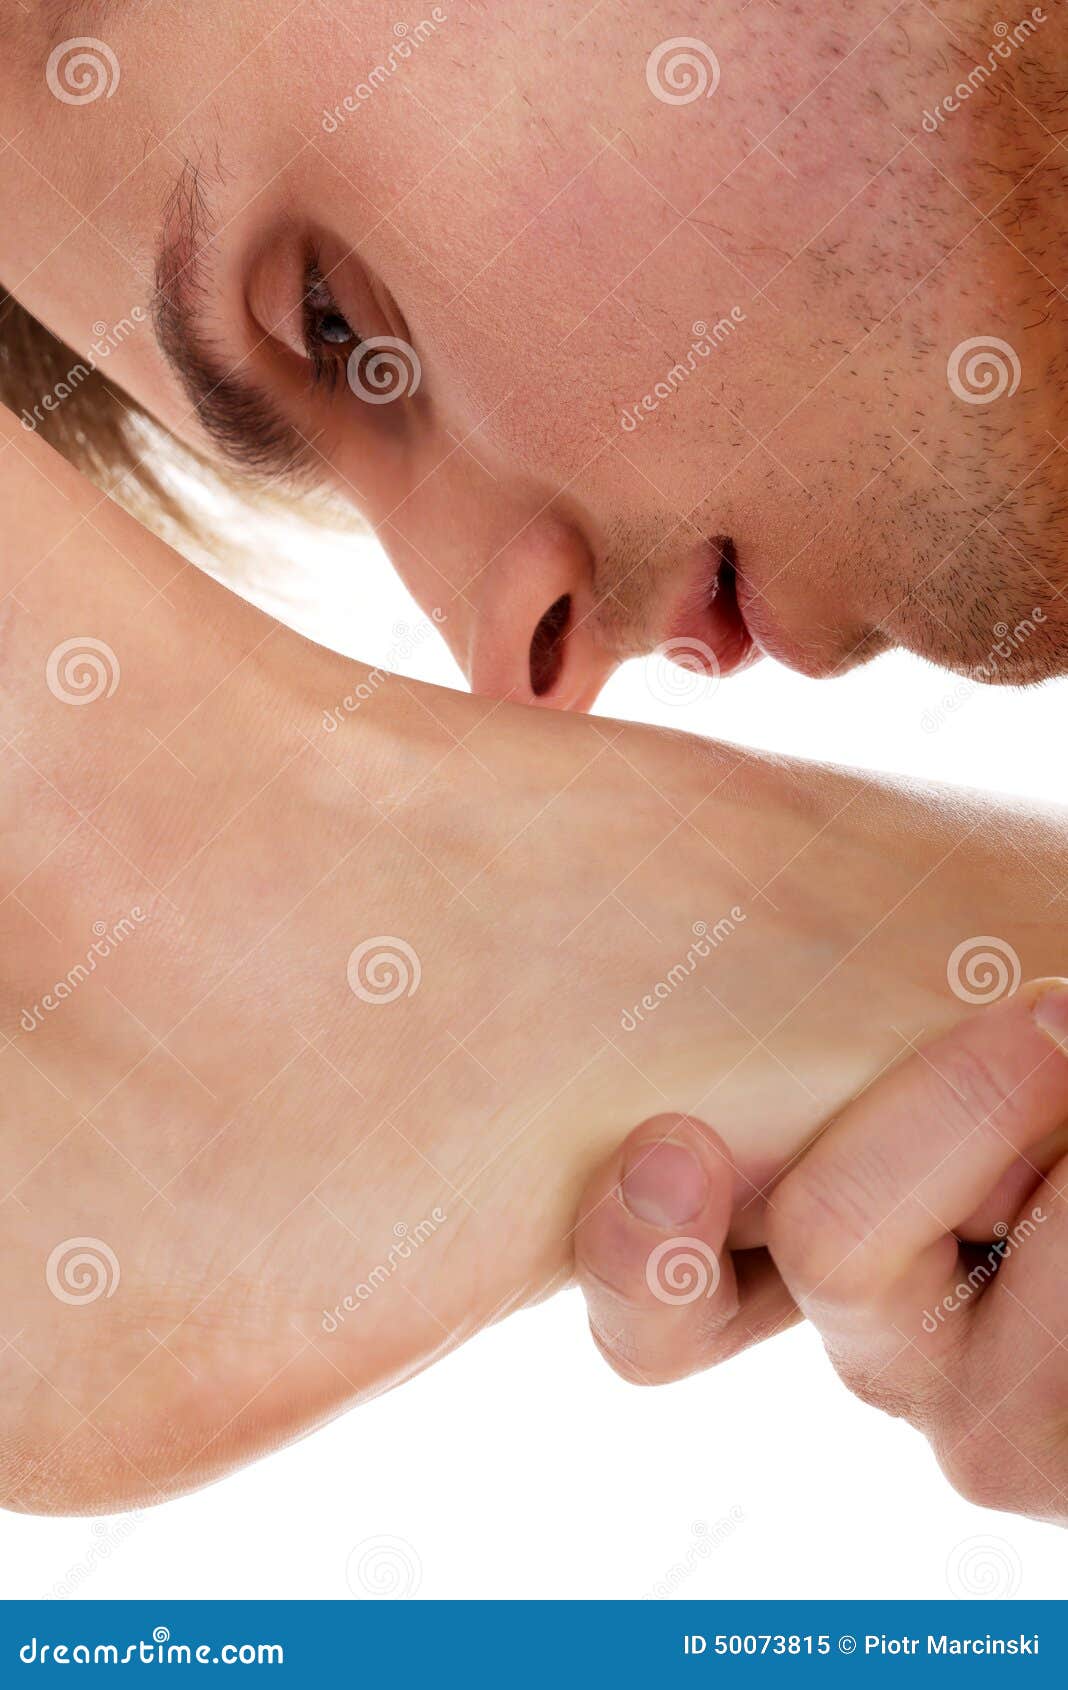 Мужчина целует ножки